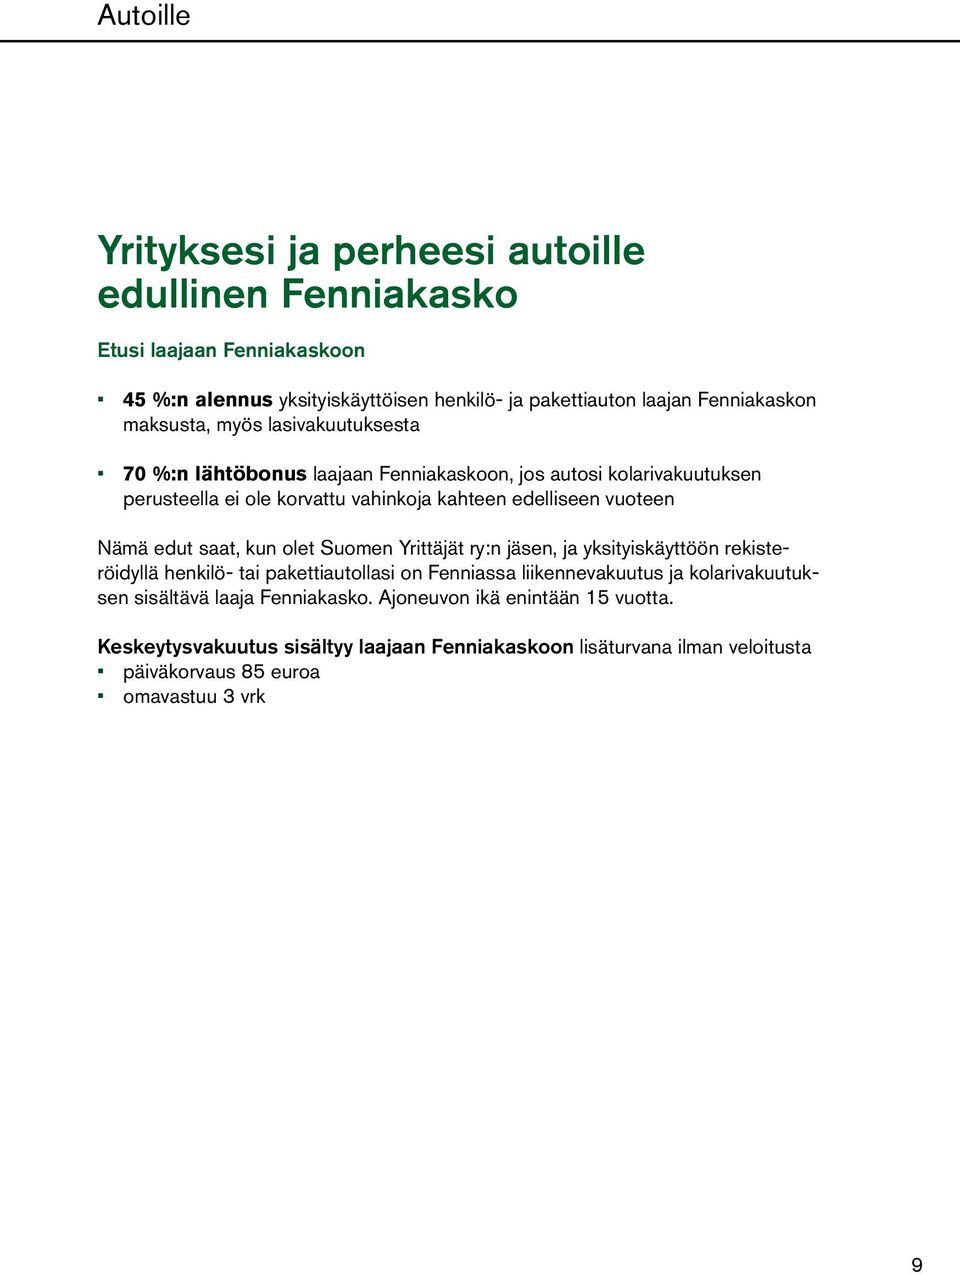 edut saat, kun olet Suomen Yrittäjät ry:n jäsen, ja yksityiskäyttöön rekisteröidyllä henkilö- tai pakettiautollasi on Fenniassa liikennevakuutus ja kolarivakuutuksen